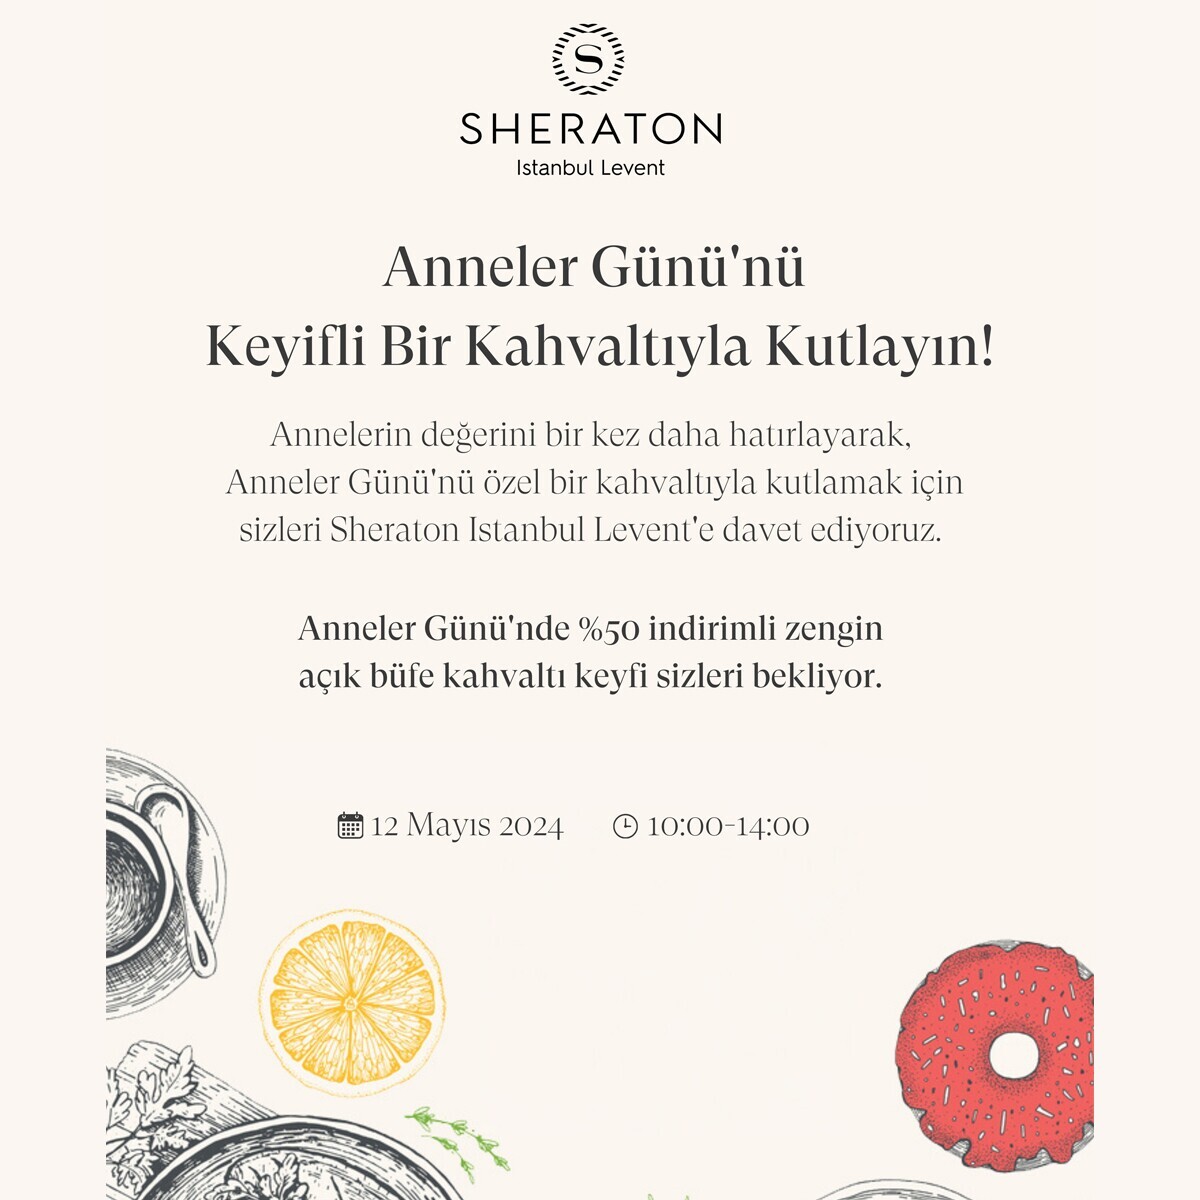 Sheraton İstanbul Levent'te Anneler Günü Özel Açık Büfe Kahvaltı